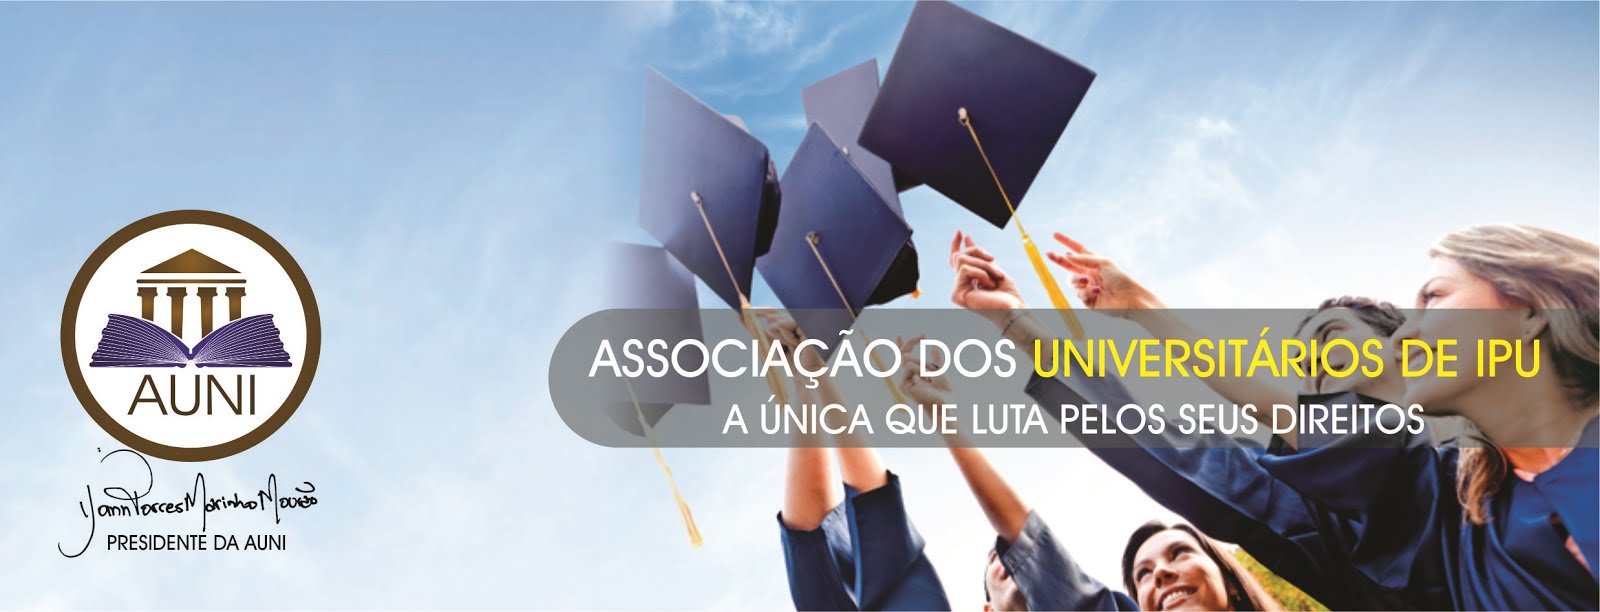 AUNI - Associação dos Universitários de Ipu